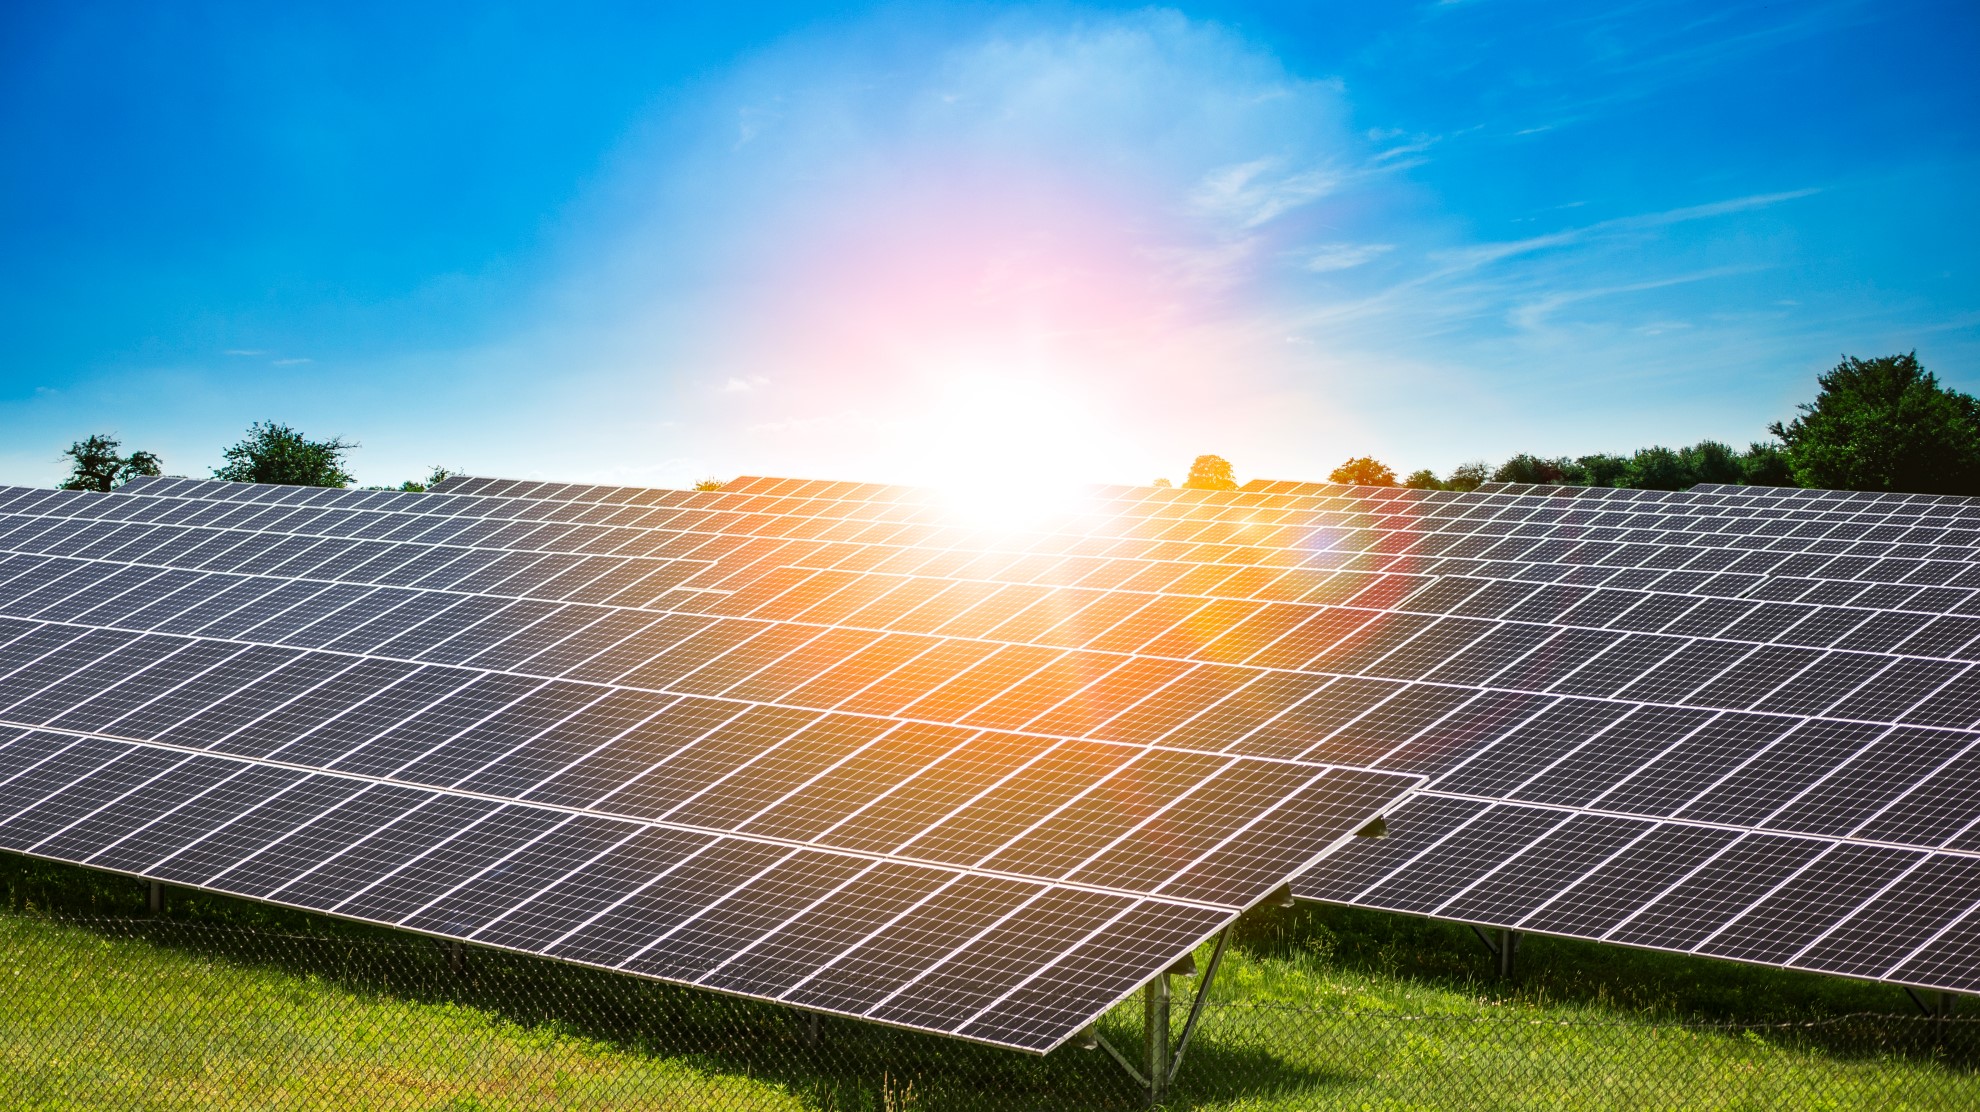 burst-of-sunlight-shining-on-solar-panels-renewab-2022-11-15-06-42-14-utc